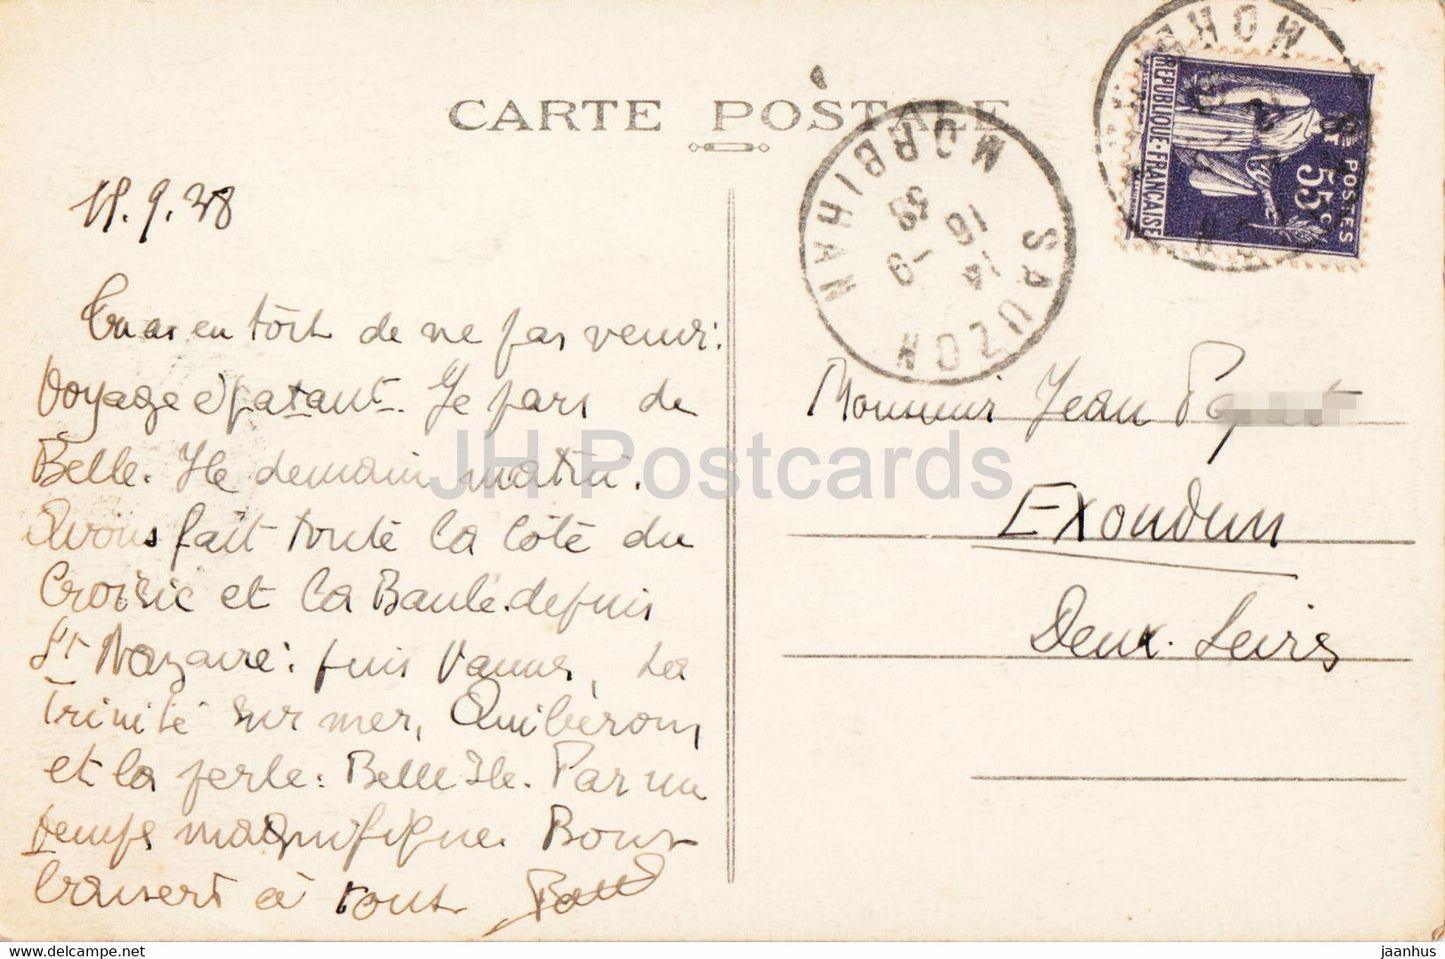 Belle Ile en Mer - Pyramides de Port Coton - 15 - old postcard - 1938 - France - used